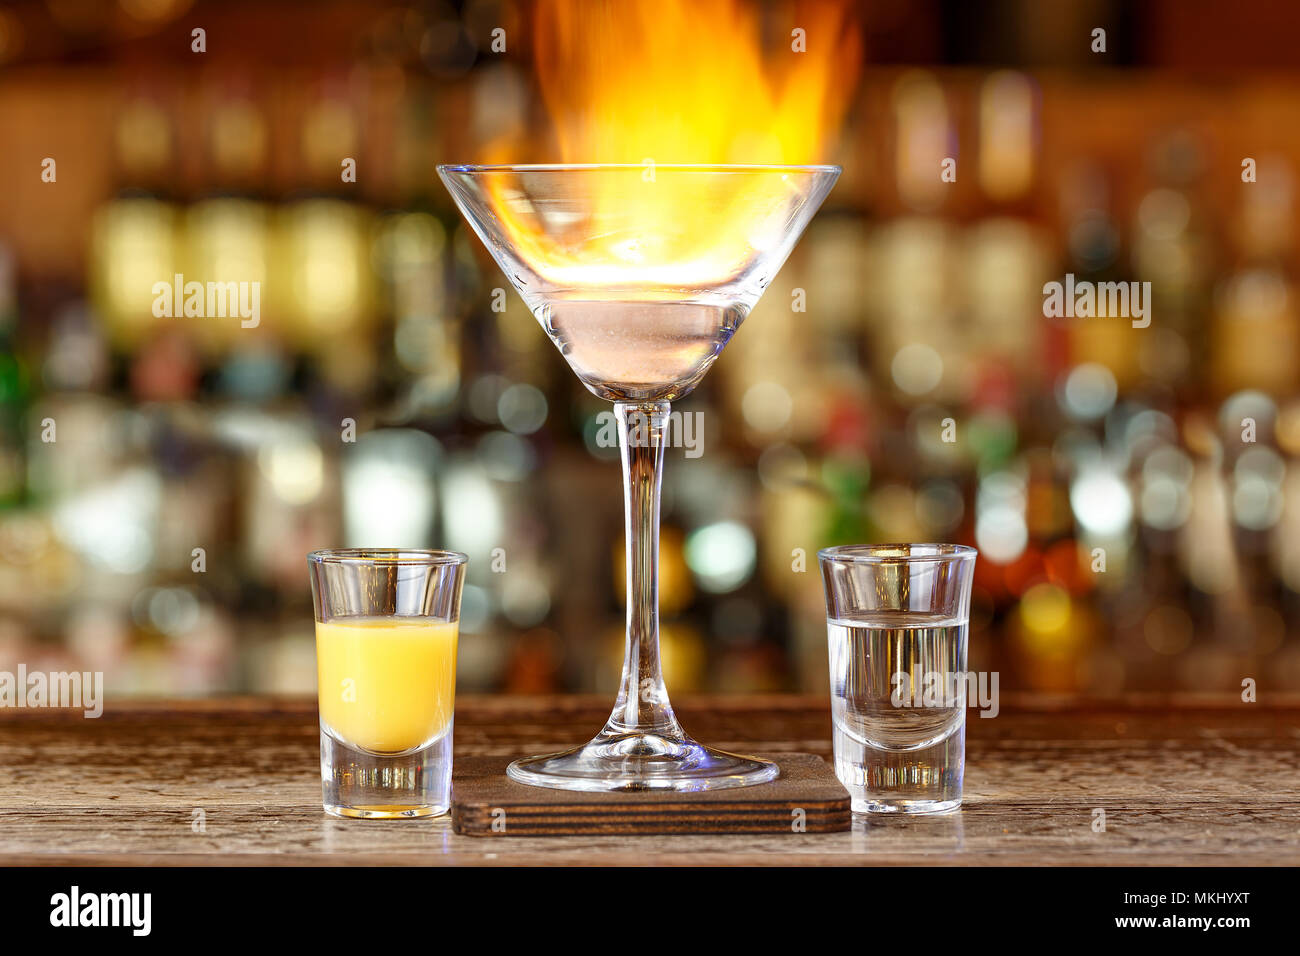 Cocktail auf der Basis von Spirituosen Malibu und rum stehen auf einer Bar in einem Restaurant auf einem verschwommenen Hintergrund der Flaschen Stockfoto